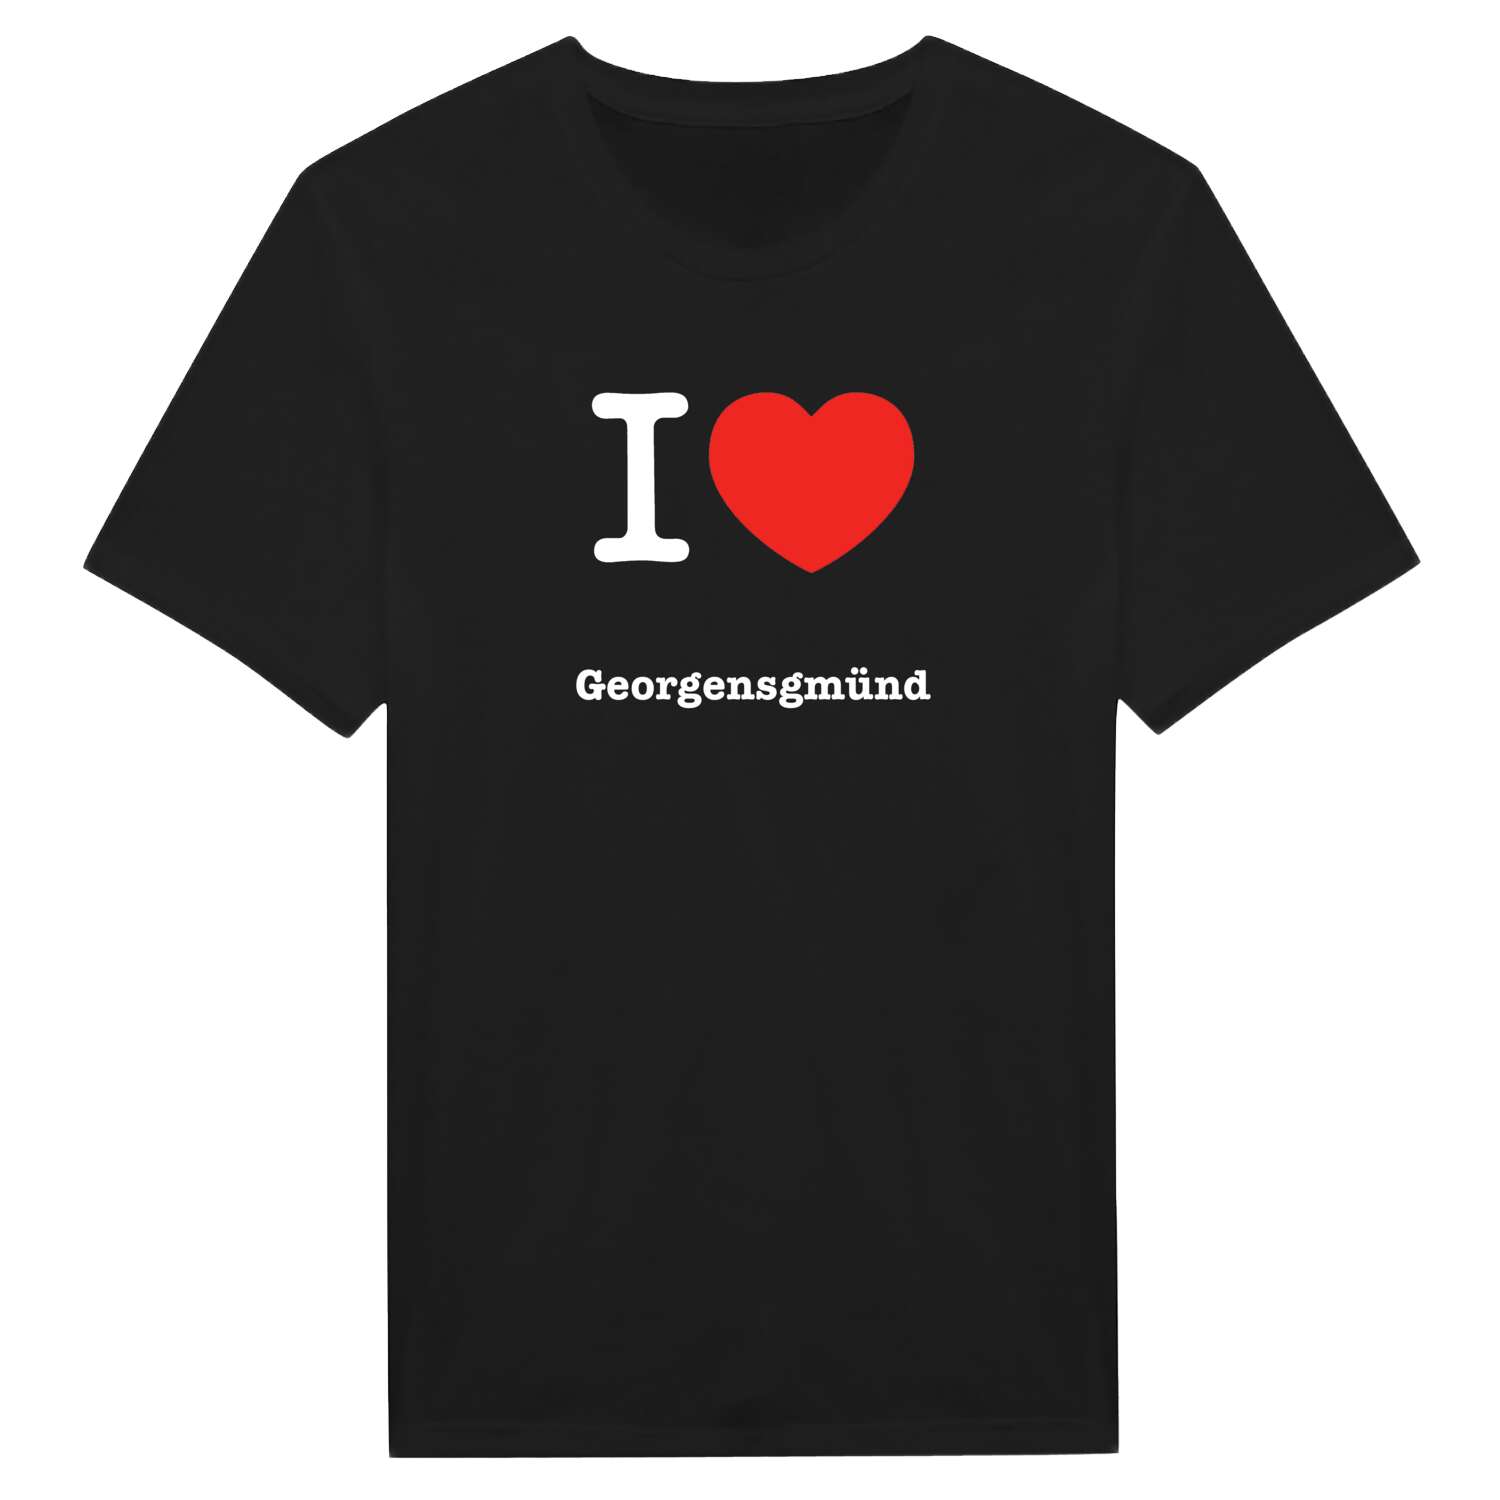 Georgensgmünd T-Shirt »I love«